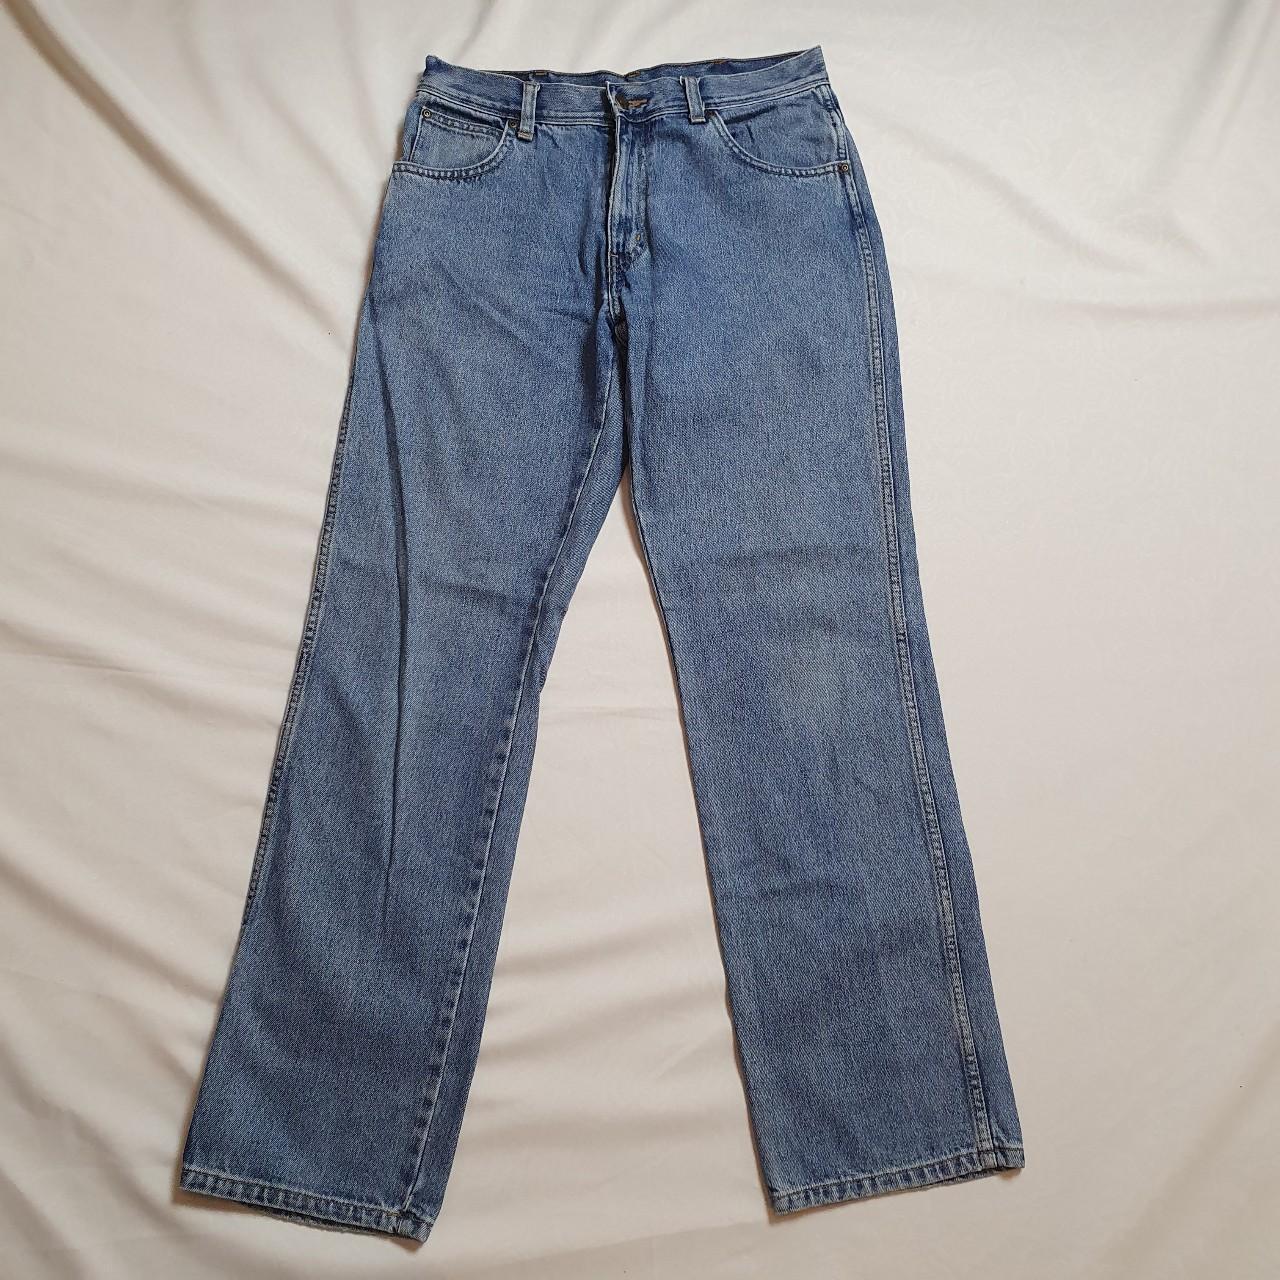 Wrangler Jeans W32 L32 Regular Fit Light Blue Jeans... - Depop